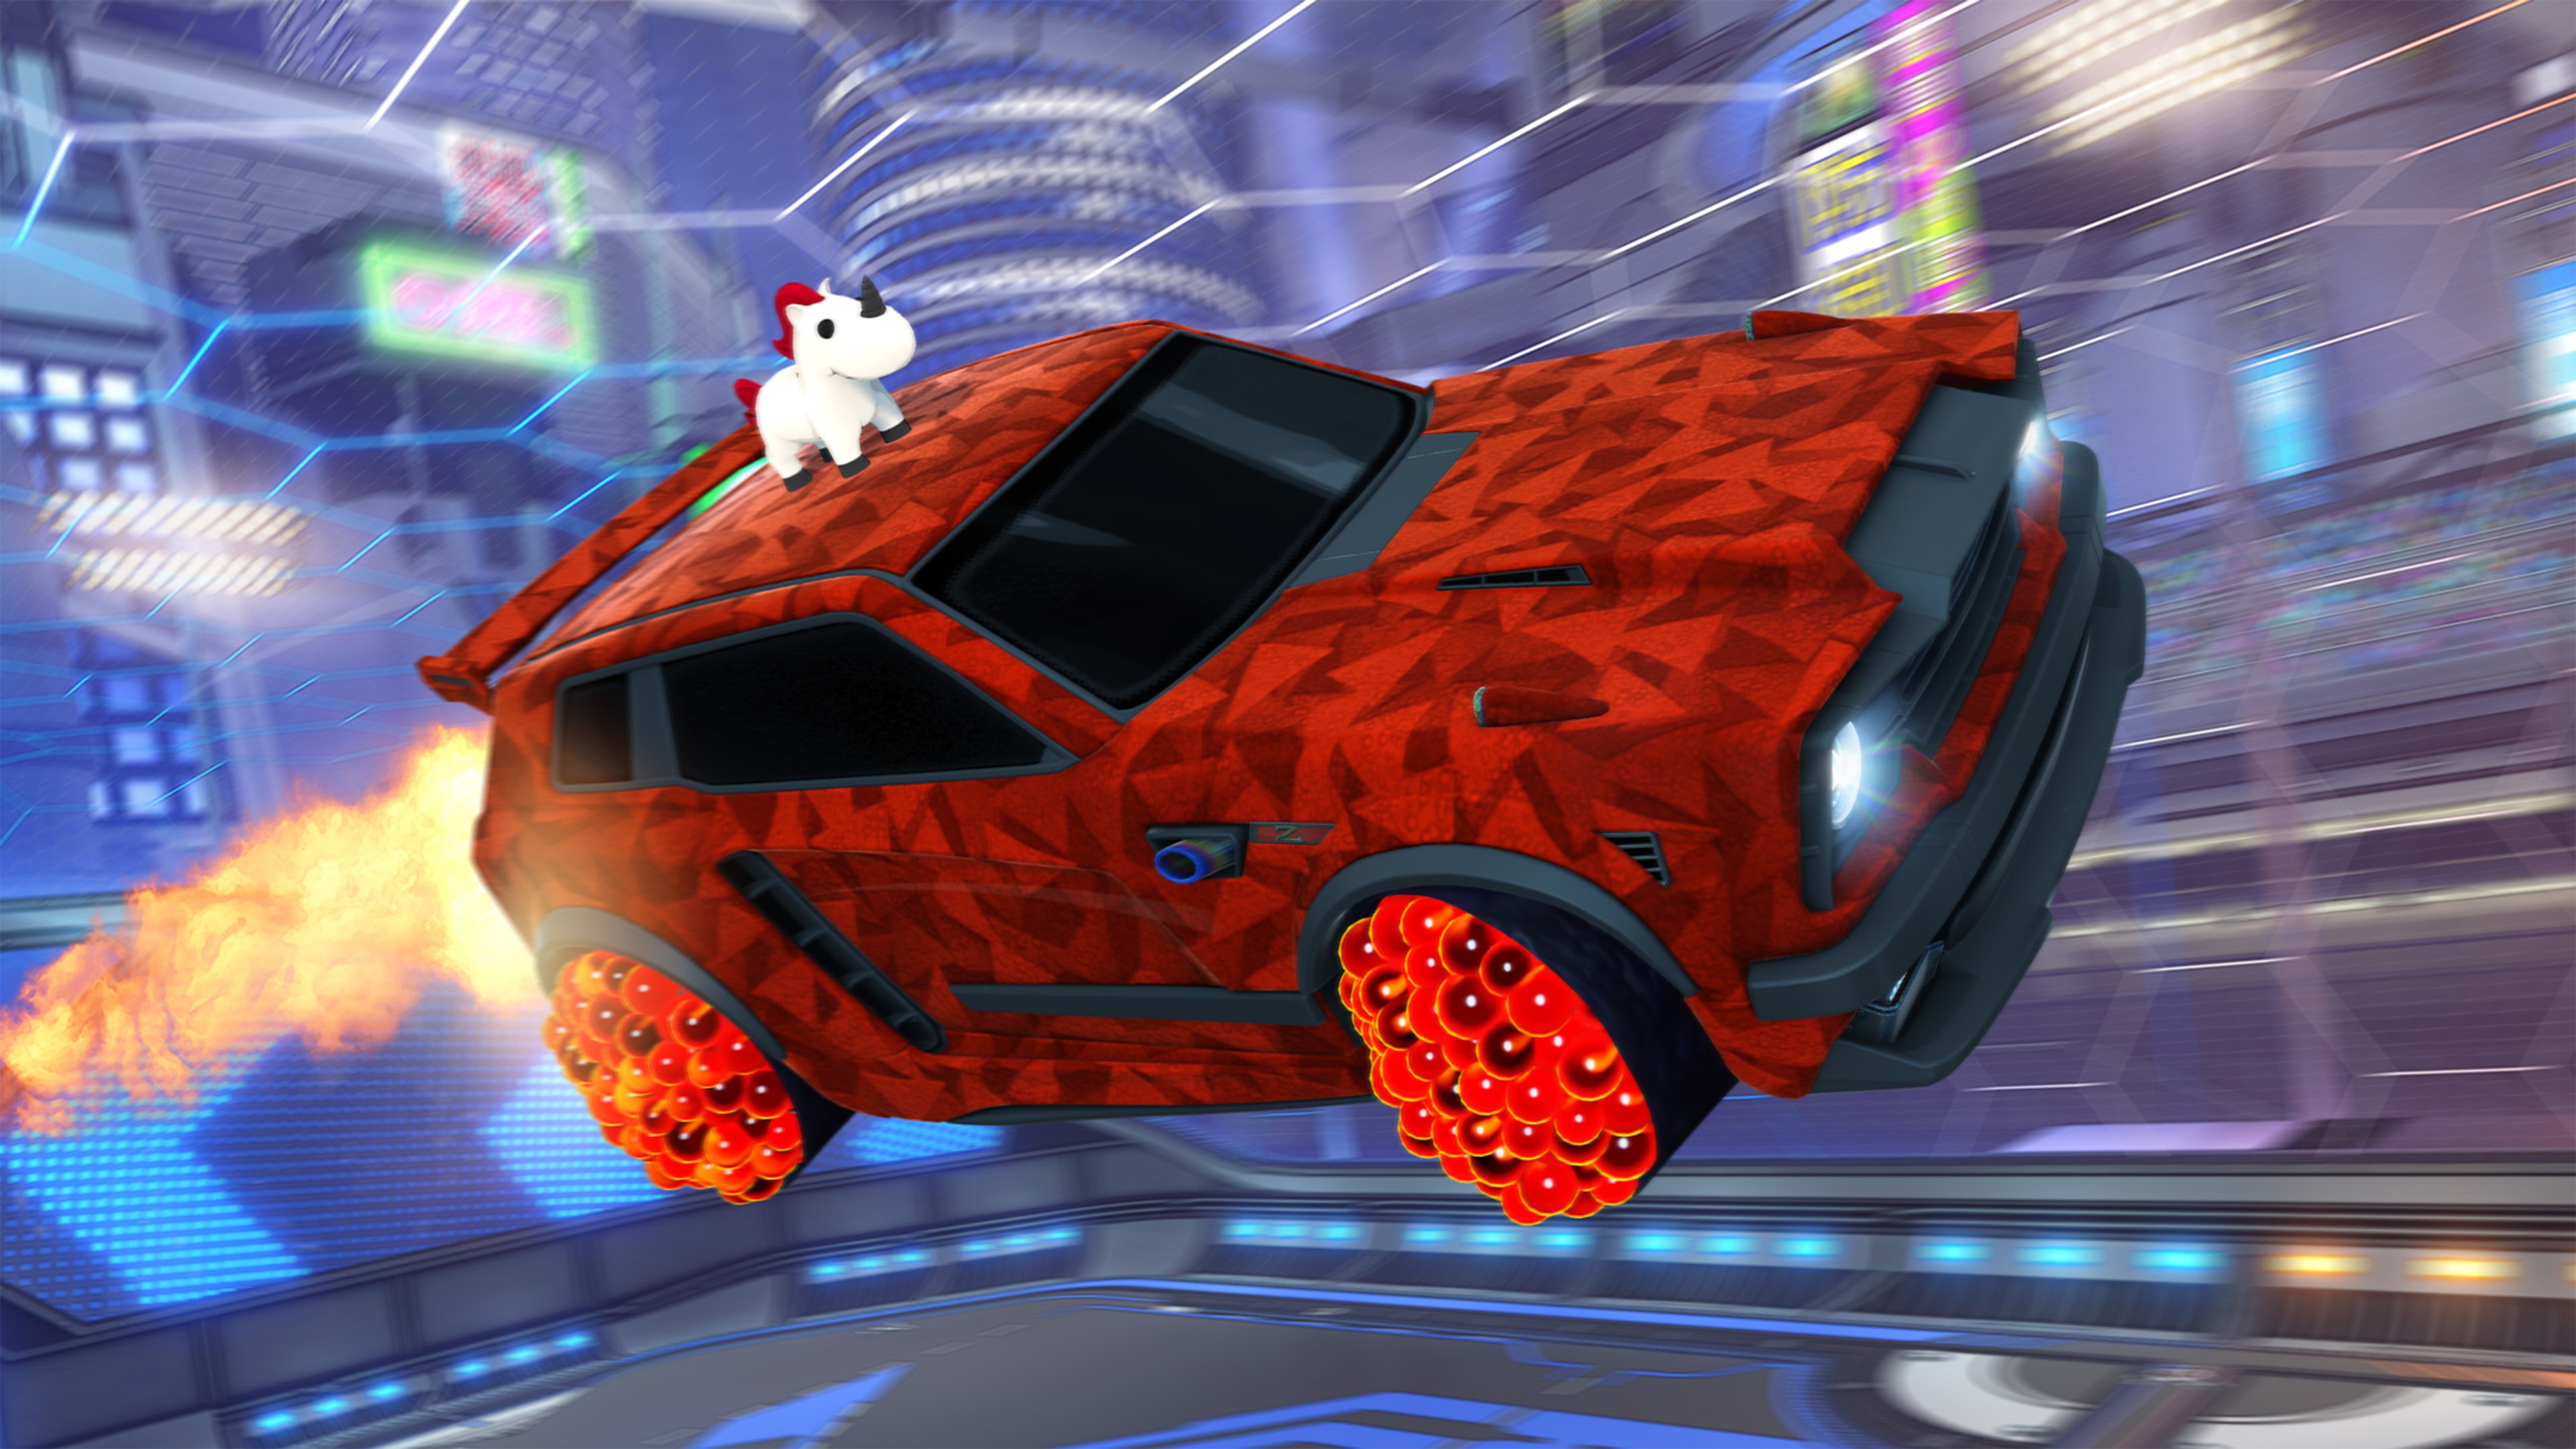 Captura de pantalla de Rocket League que muestra un auto con un animal tipo unicornio en el toldo y pintura roja geométrica